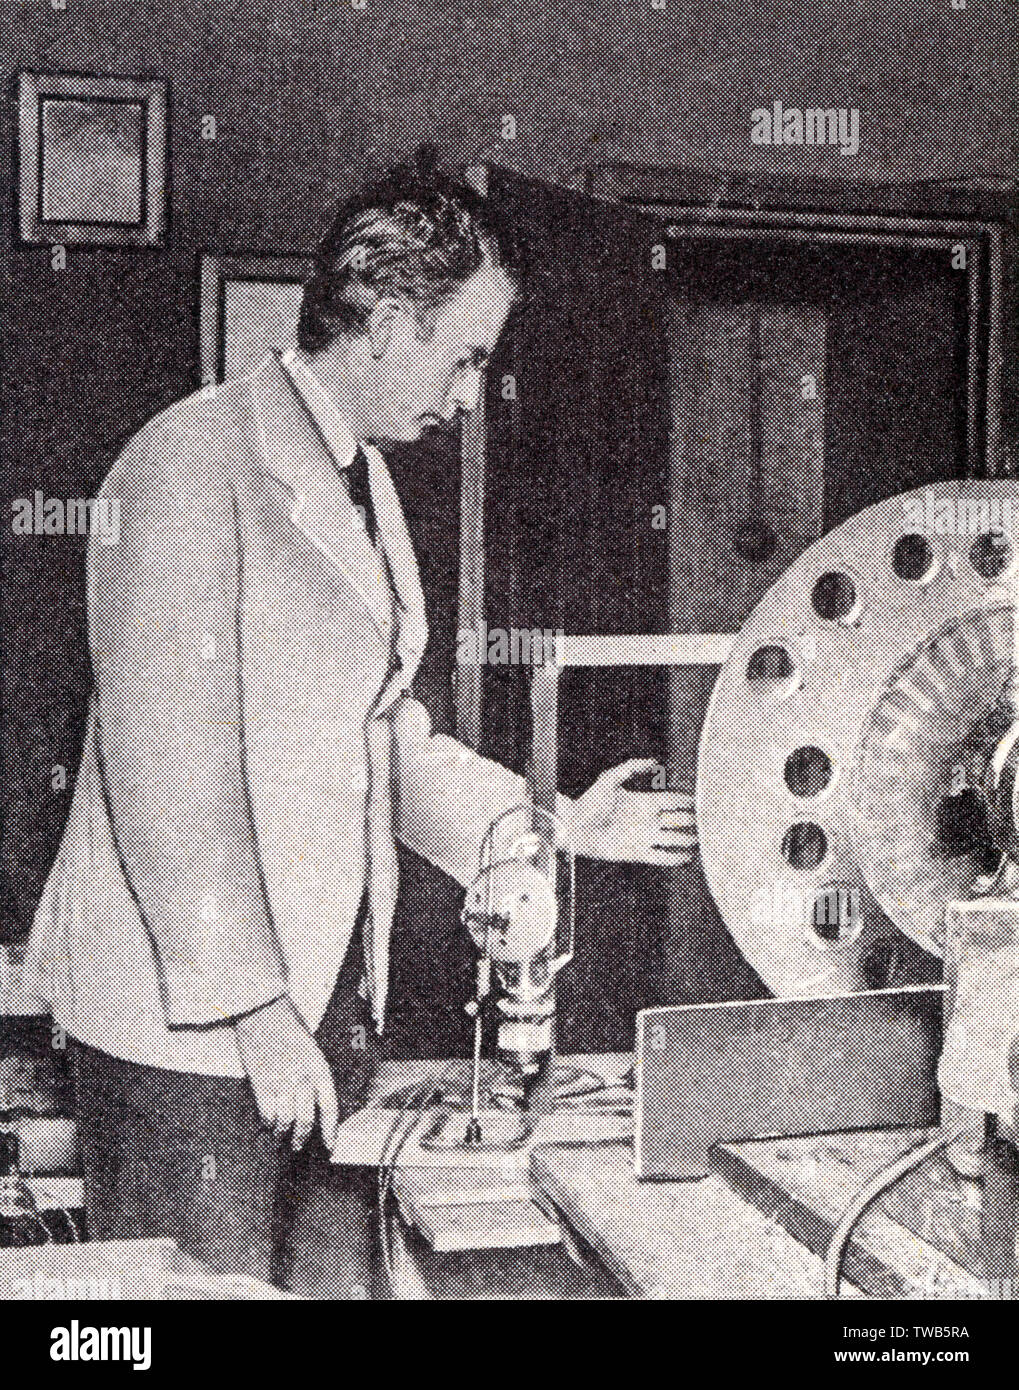 John Logie Baird - démontre la première télévision. Date : 1925 Photo Stock  - Alamy